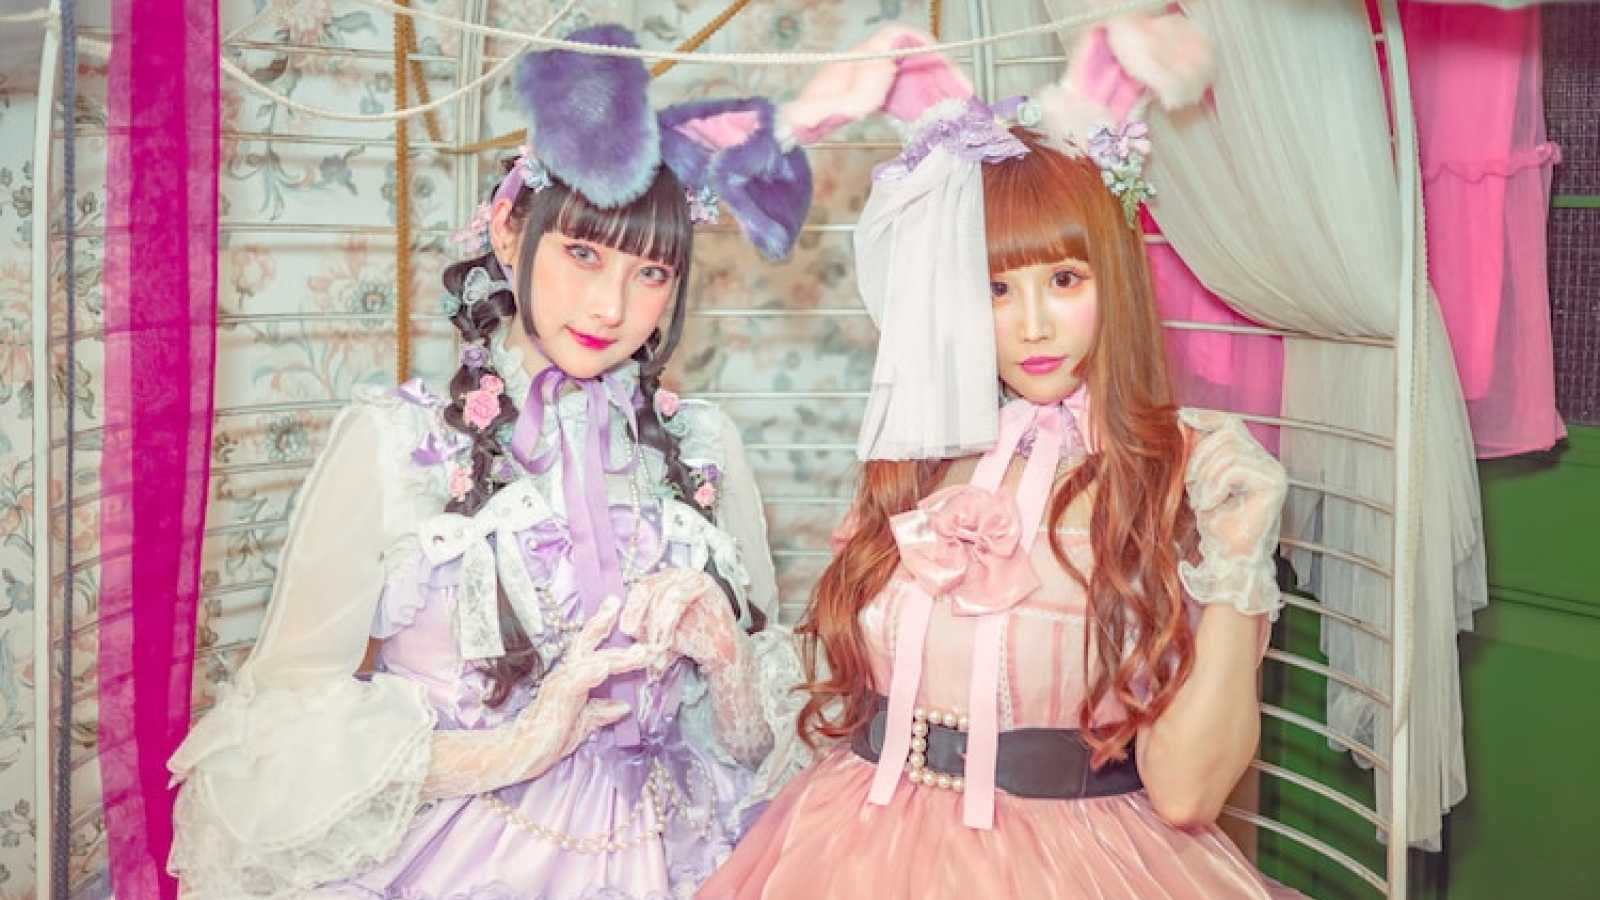 Lolita-popyhtye Bonjour Suzuki&RinRin Doll esittäytyy ensimmäisellä musiikkivideollaan © Bonjour Suzuki&RinRin Doll. All rights reserved.